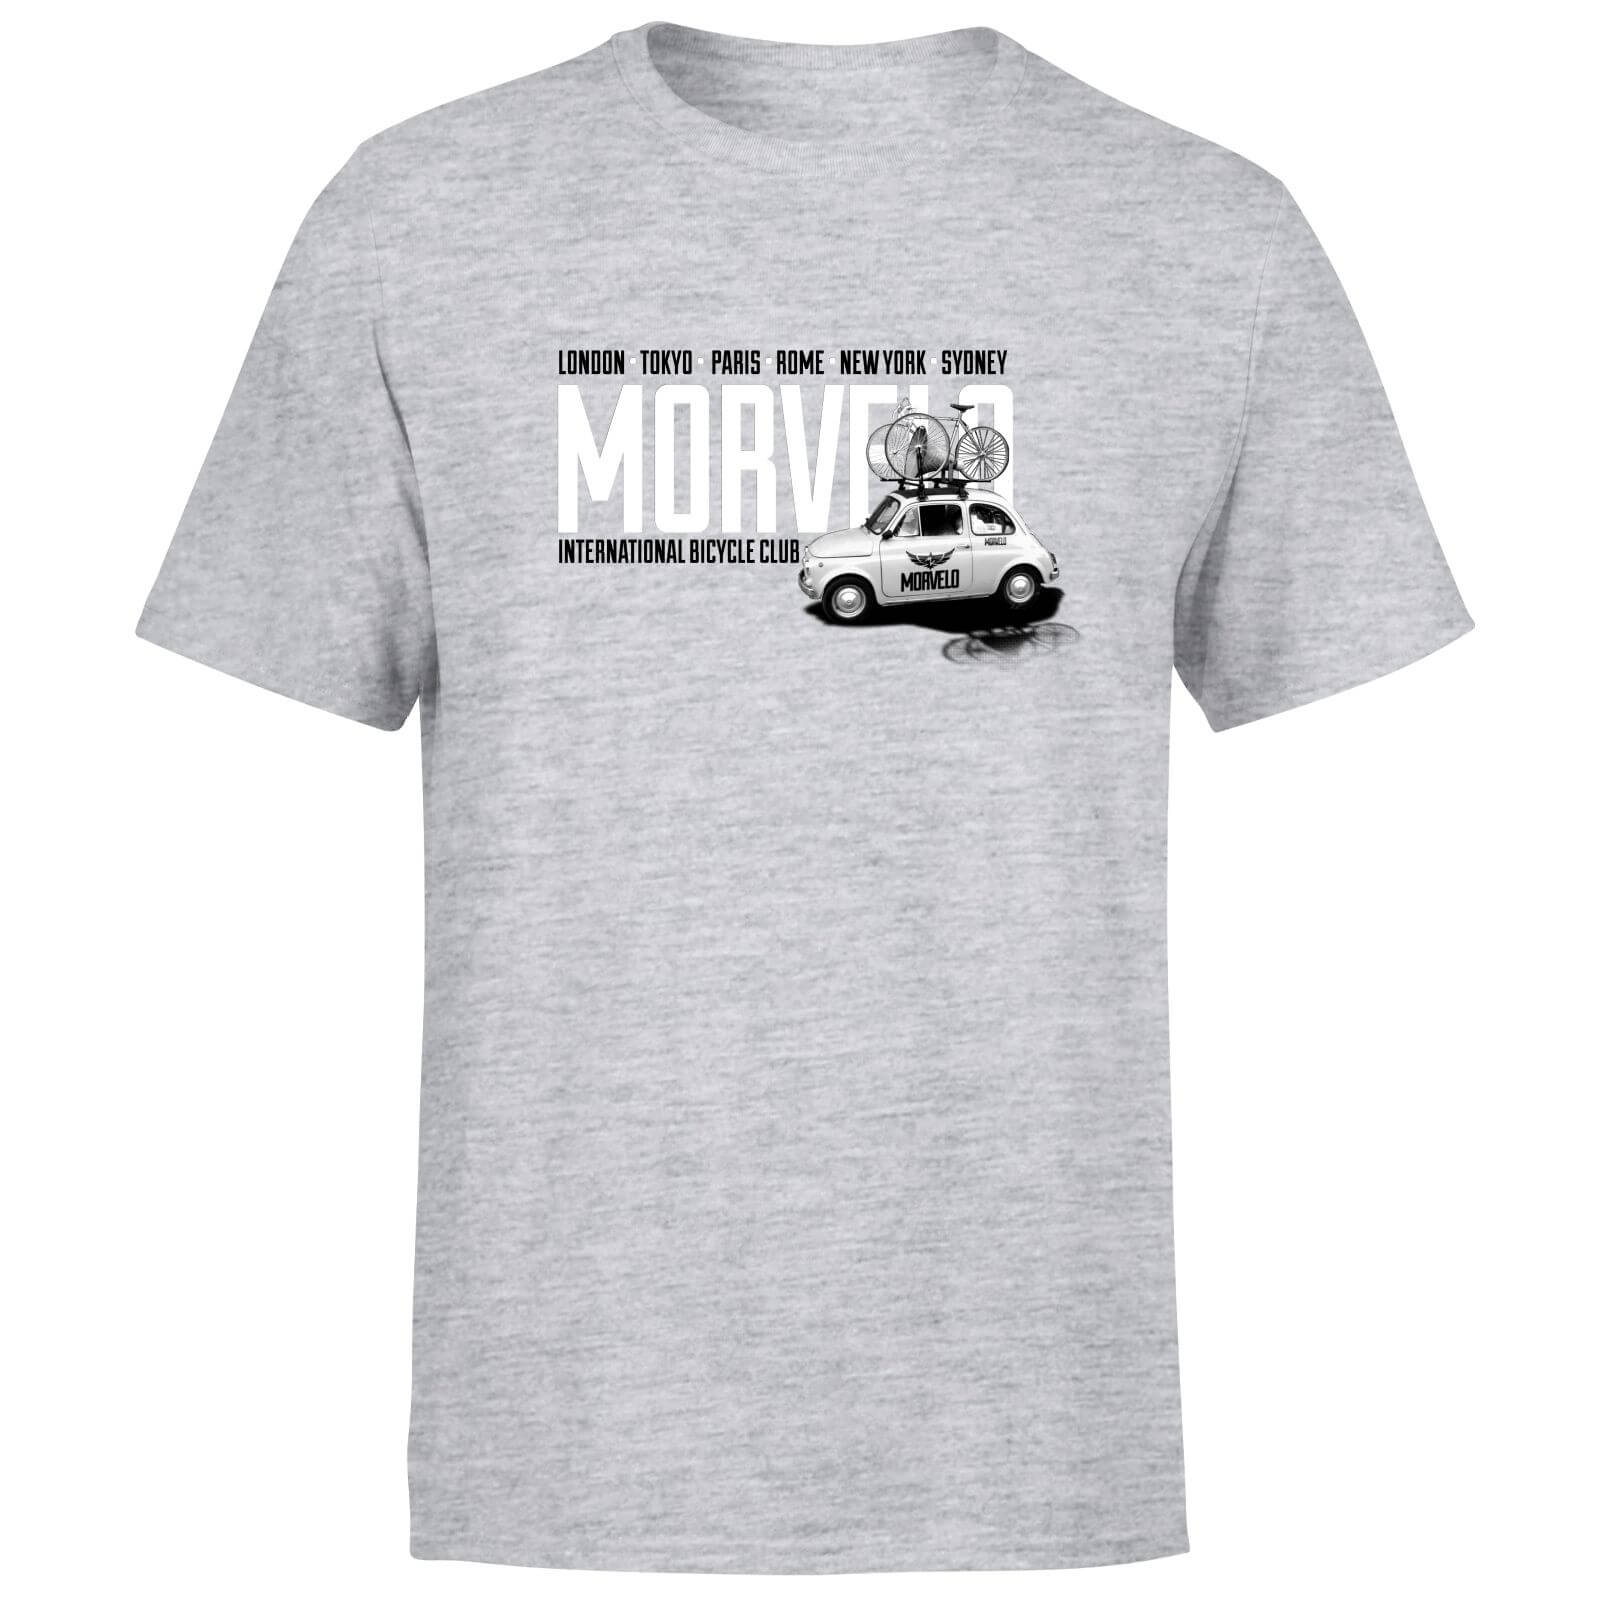 Morvelo Cinque Men's T-Shirt - Grey - XL - Coral